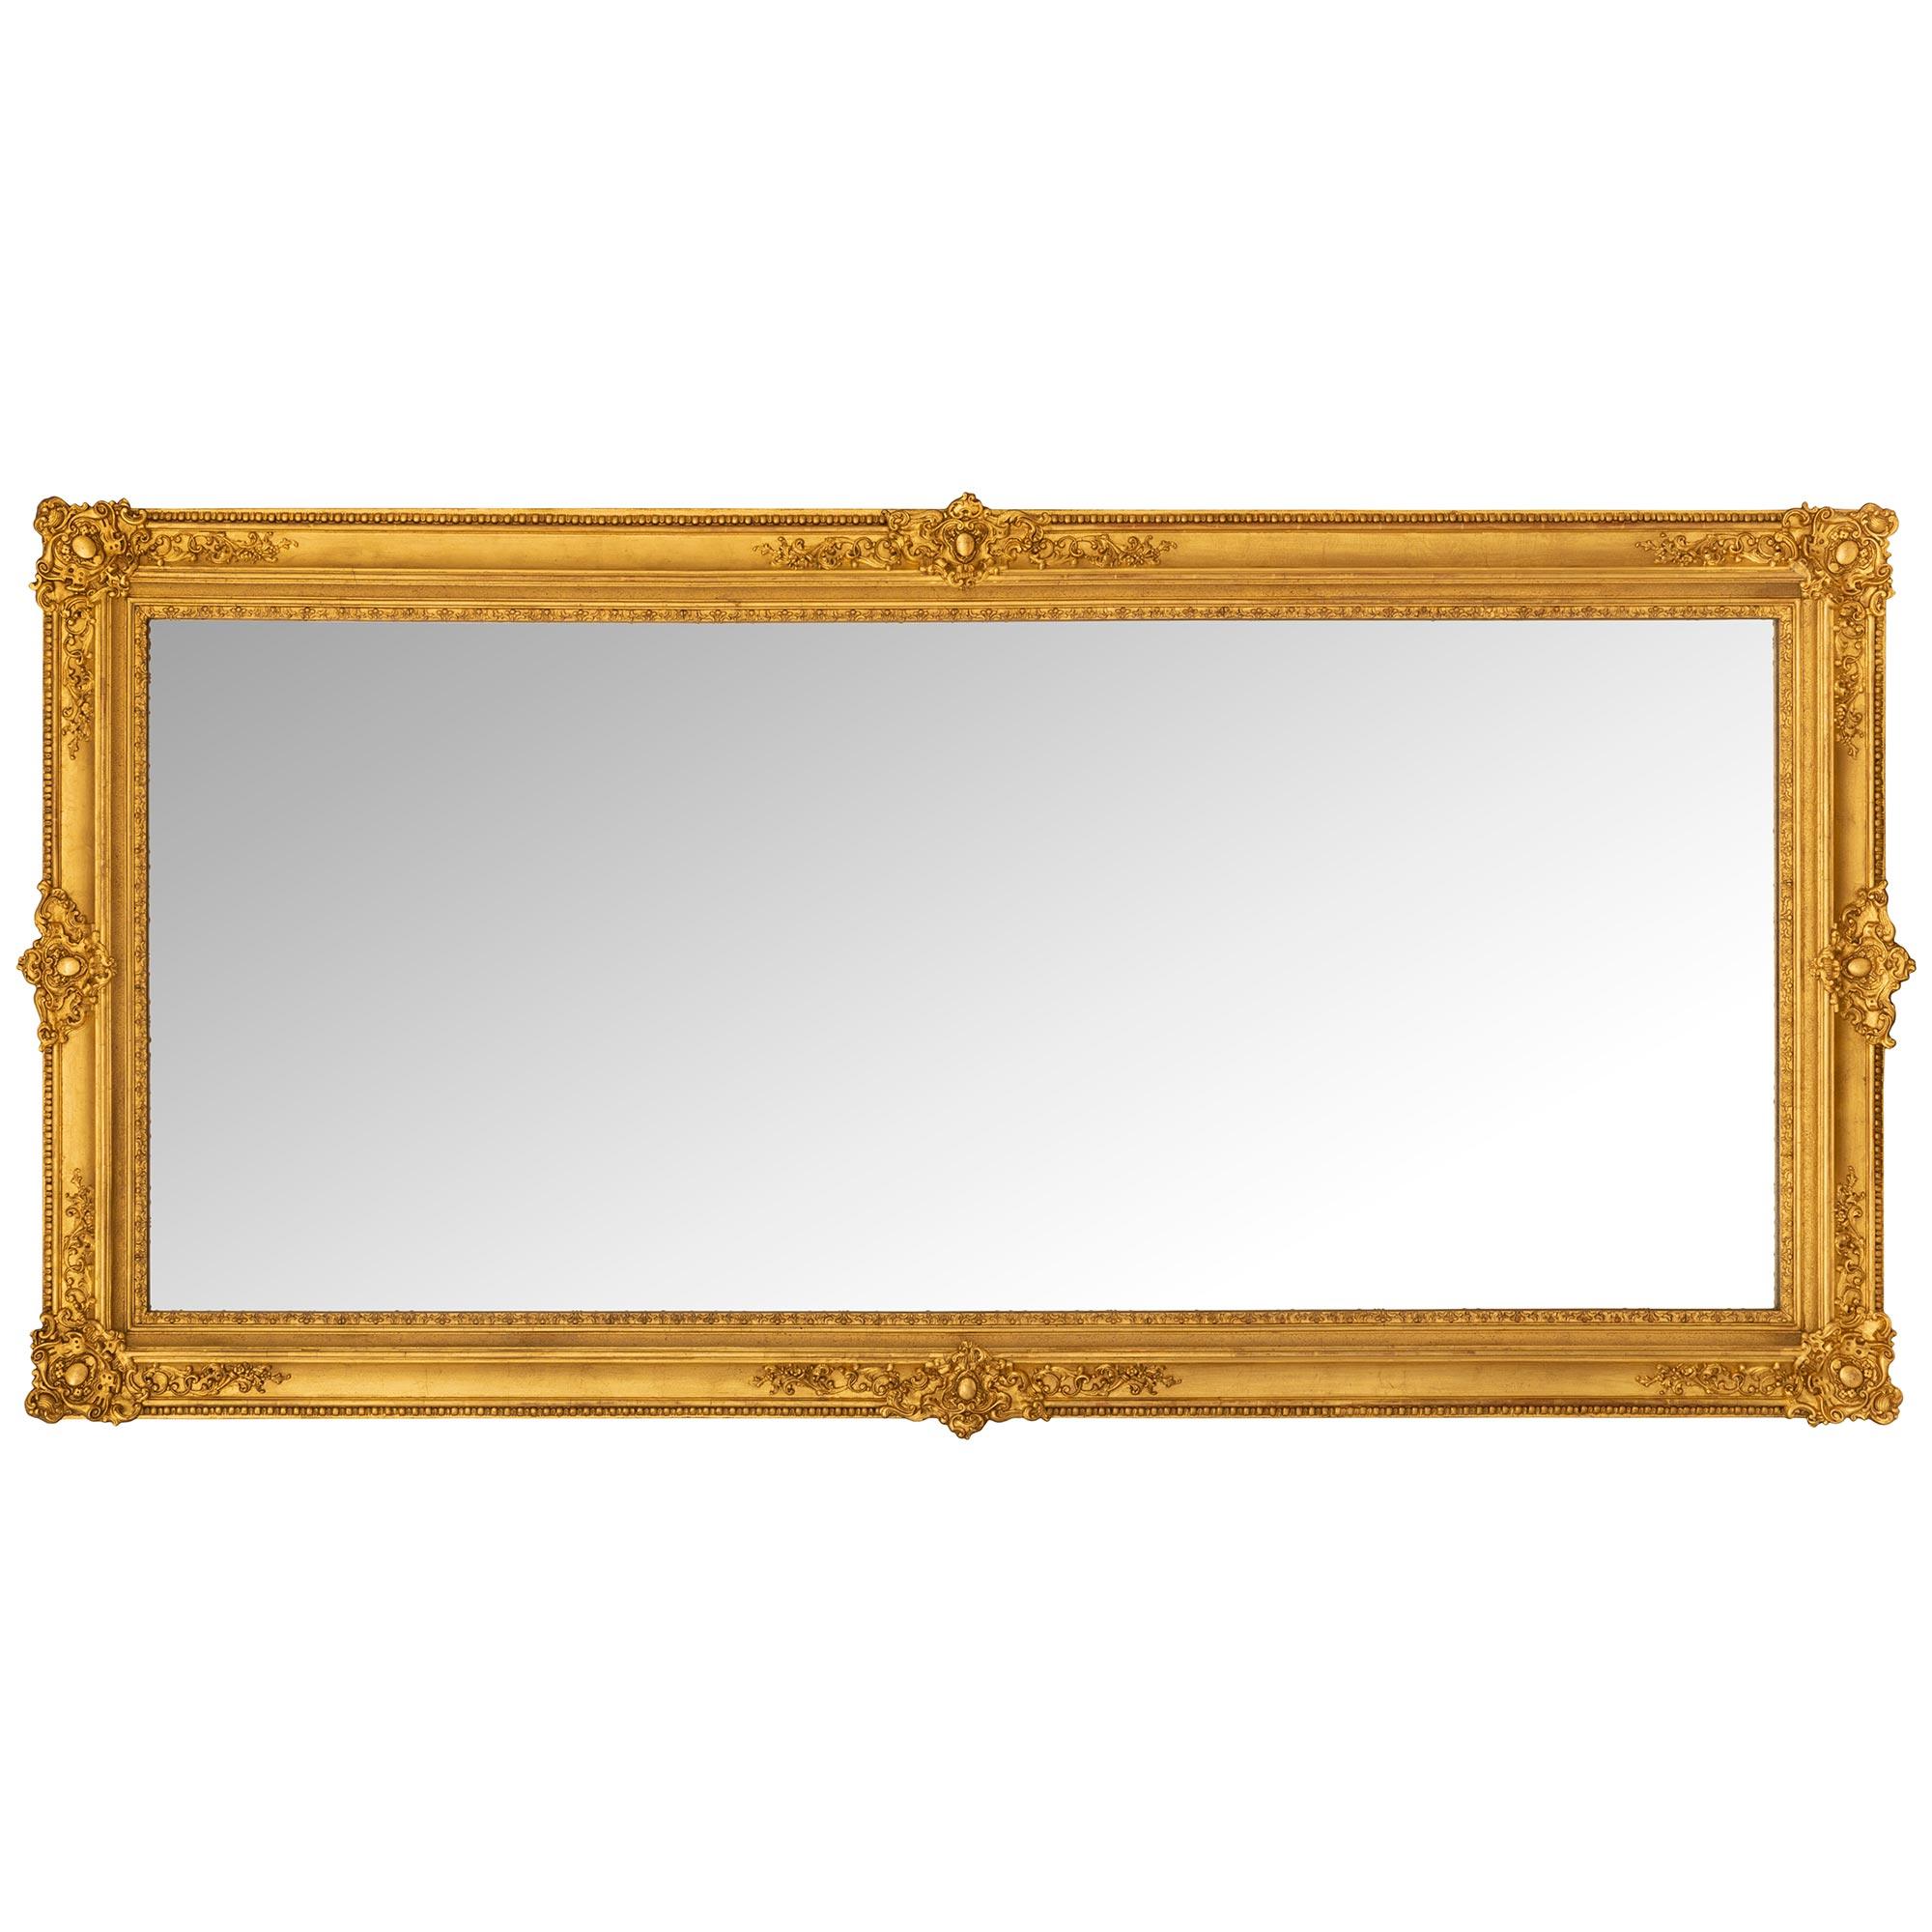 Eine elegante Französisch Mitte des 19. Jahrhunderts Louis XVI st. Giltwood Spiegel. Der Spiegel behält seine ursprüngliche Spiegelplatte, die von einer eleganten, gesprenkelten Umrandung und einer schönen inneren Zackenleiste umrahmt ist. Der